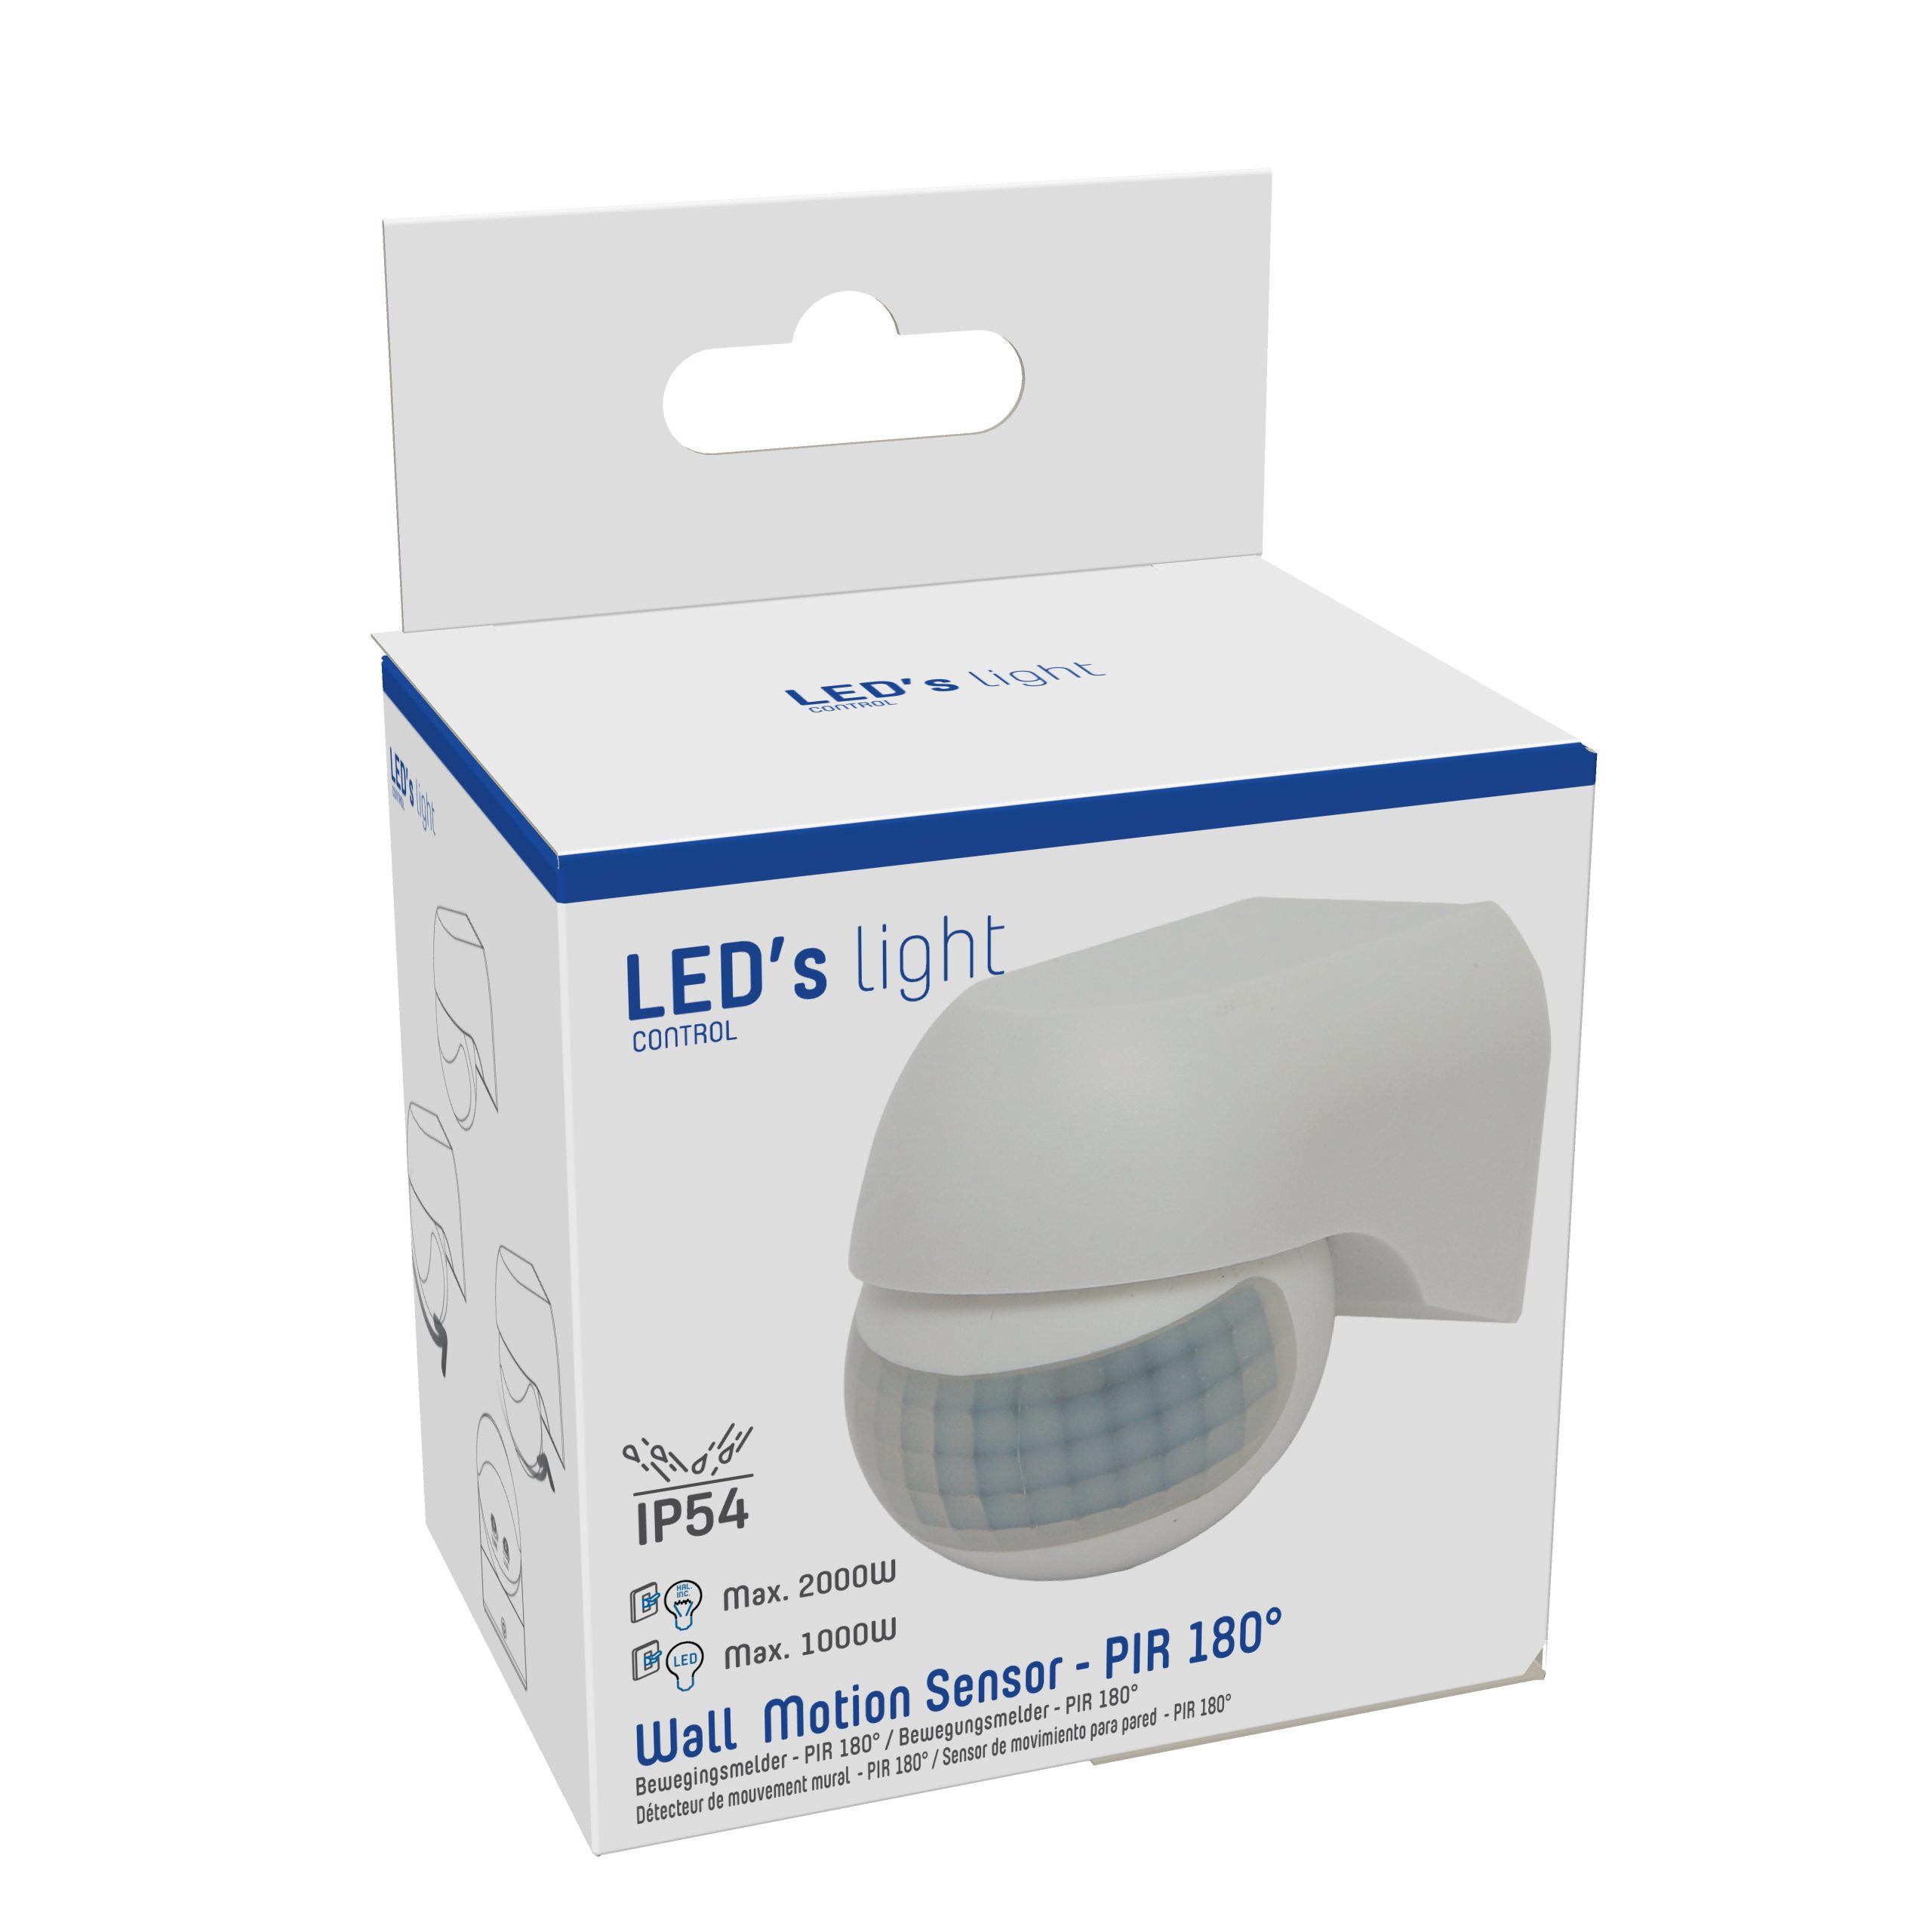 LED's light Bewegungsmelder 0190112 weiß Aufputz-Bewegungsmelder, 180° IP54